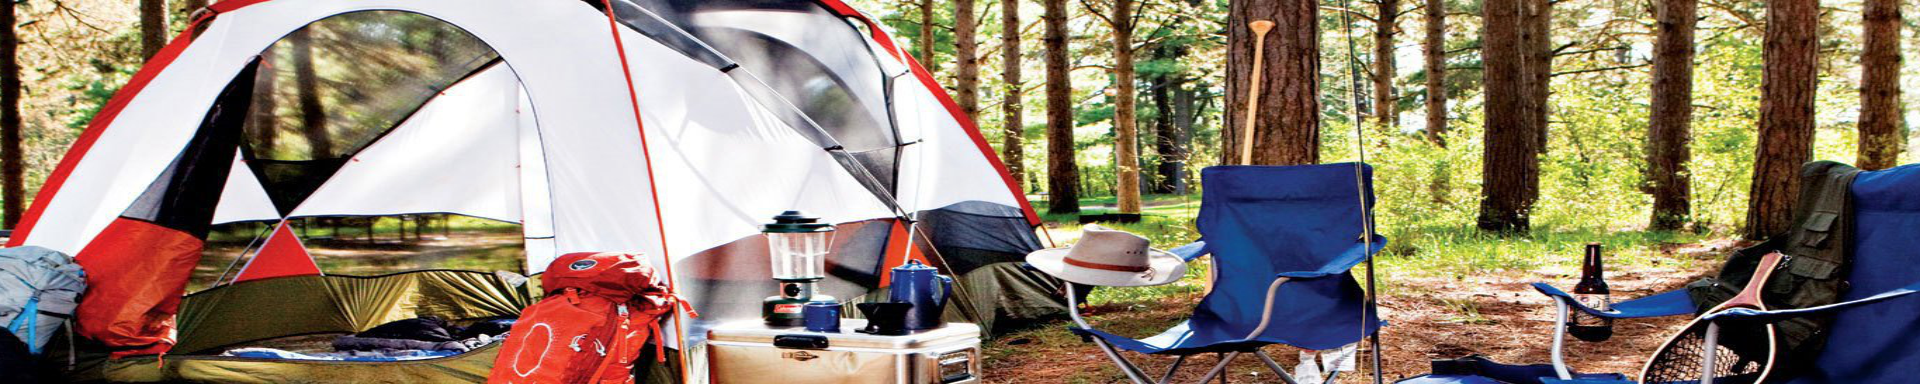 Camping & Hiking | MunroPowersports.com | Munro Industries mp-1008030105